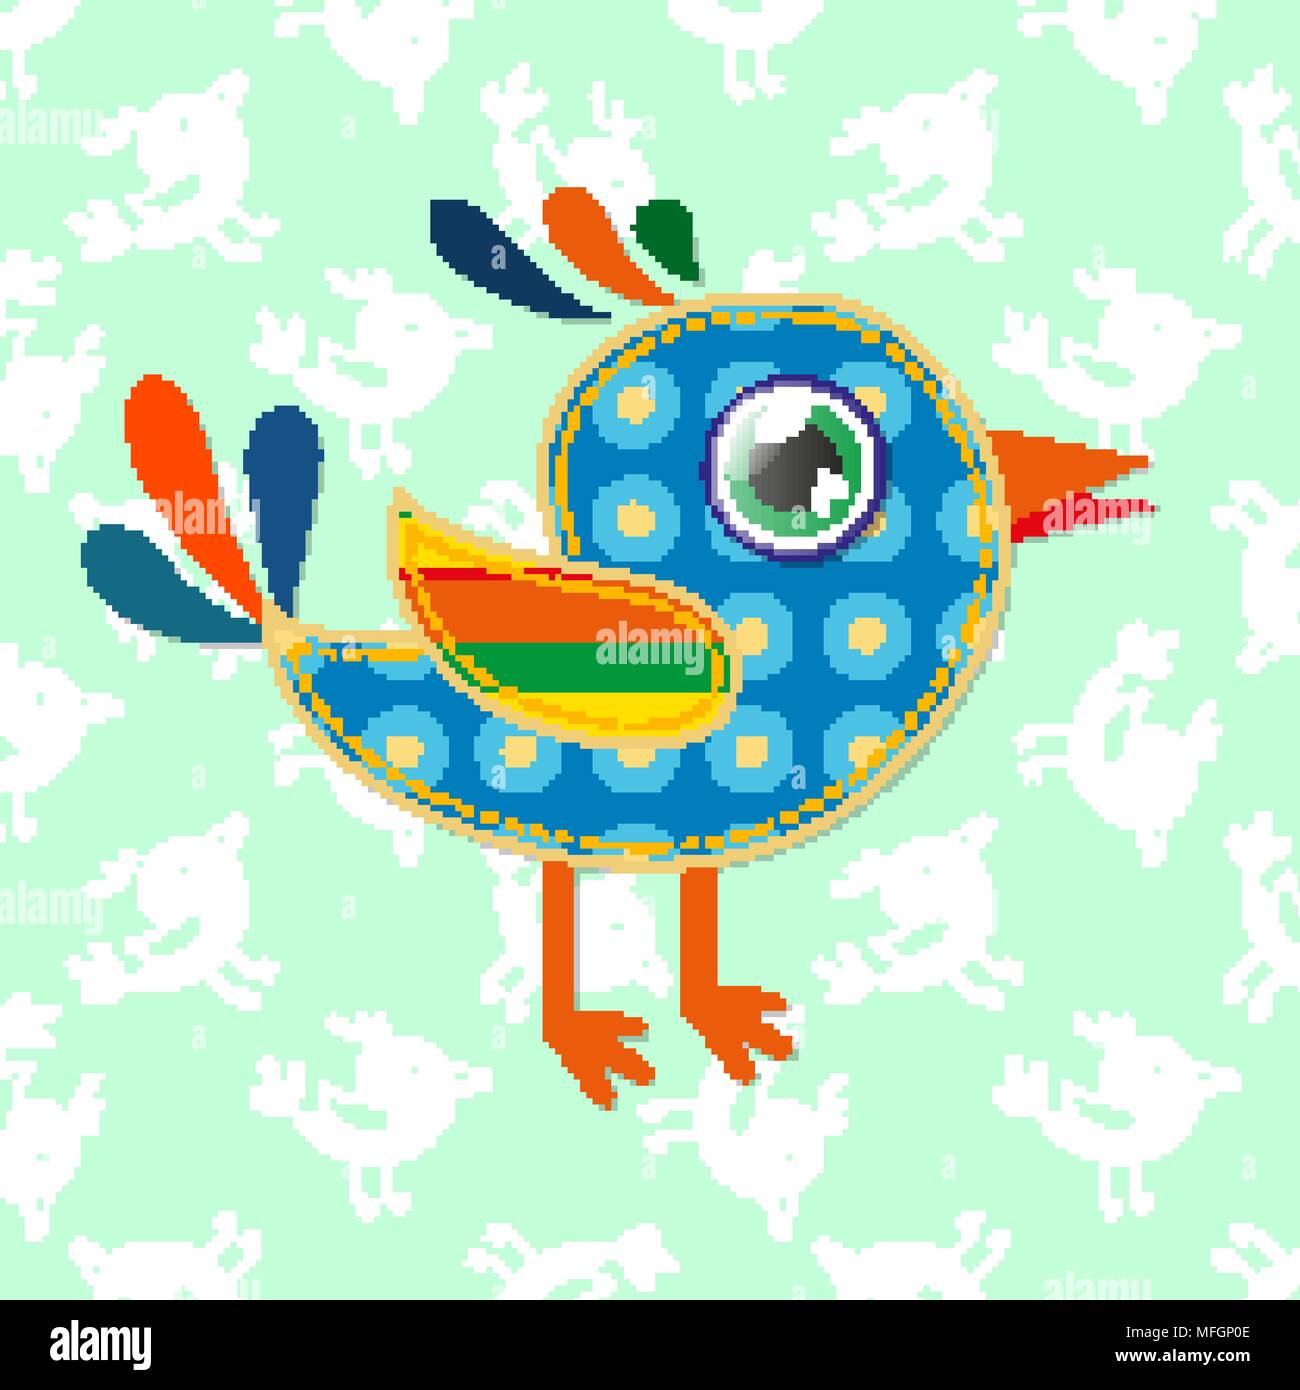 Ein Cartoon sparrow mit bunten Texturen. Vector Illustration Stock Vektor